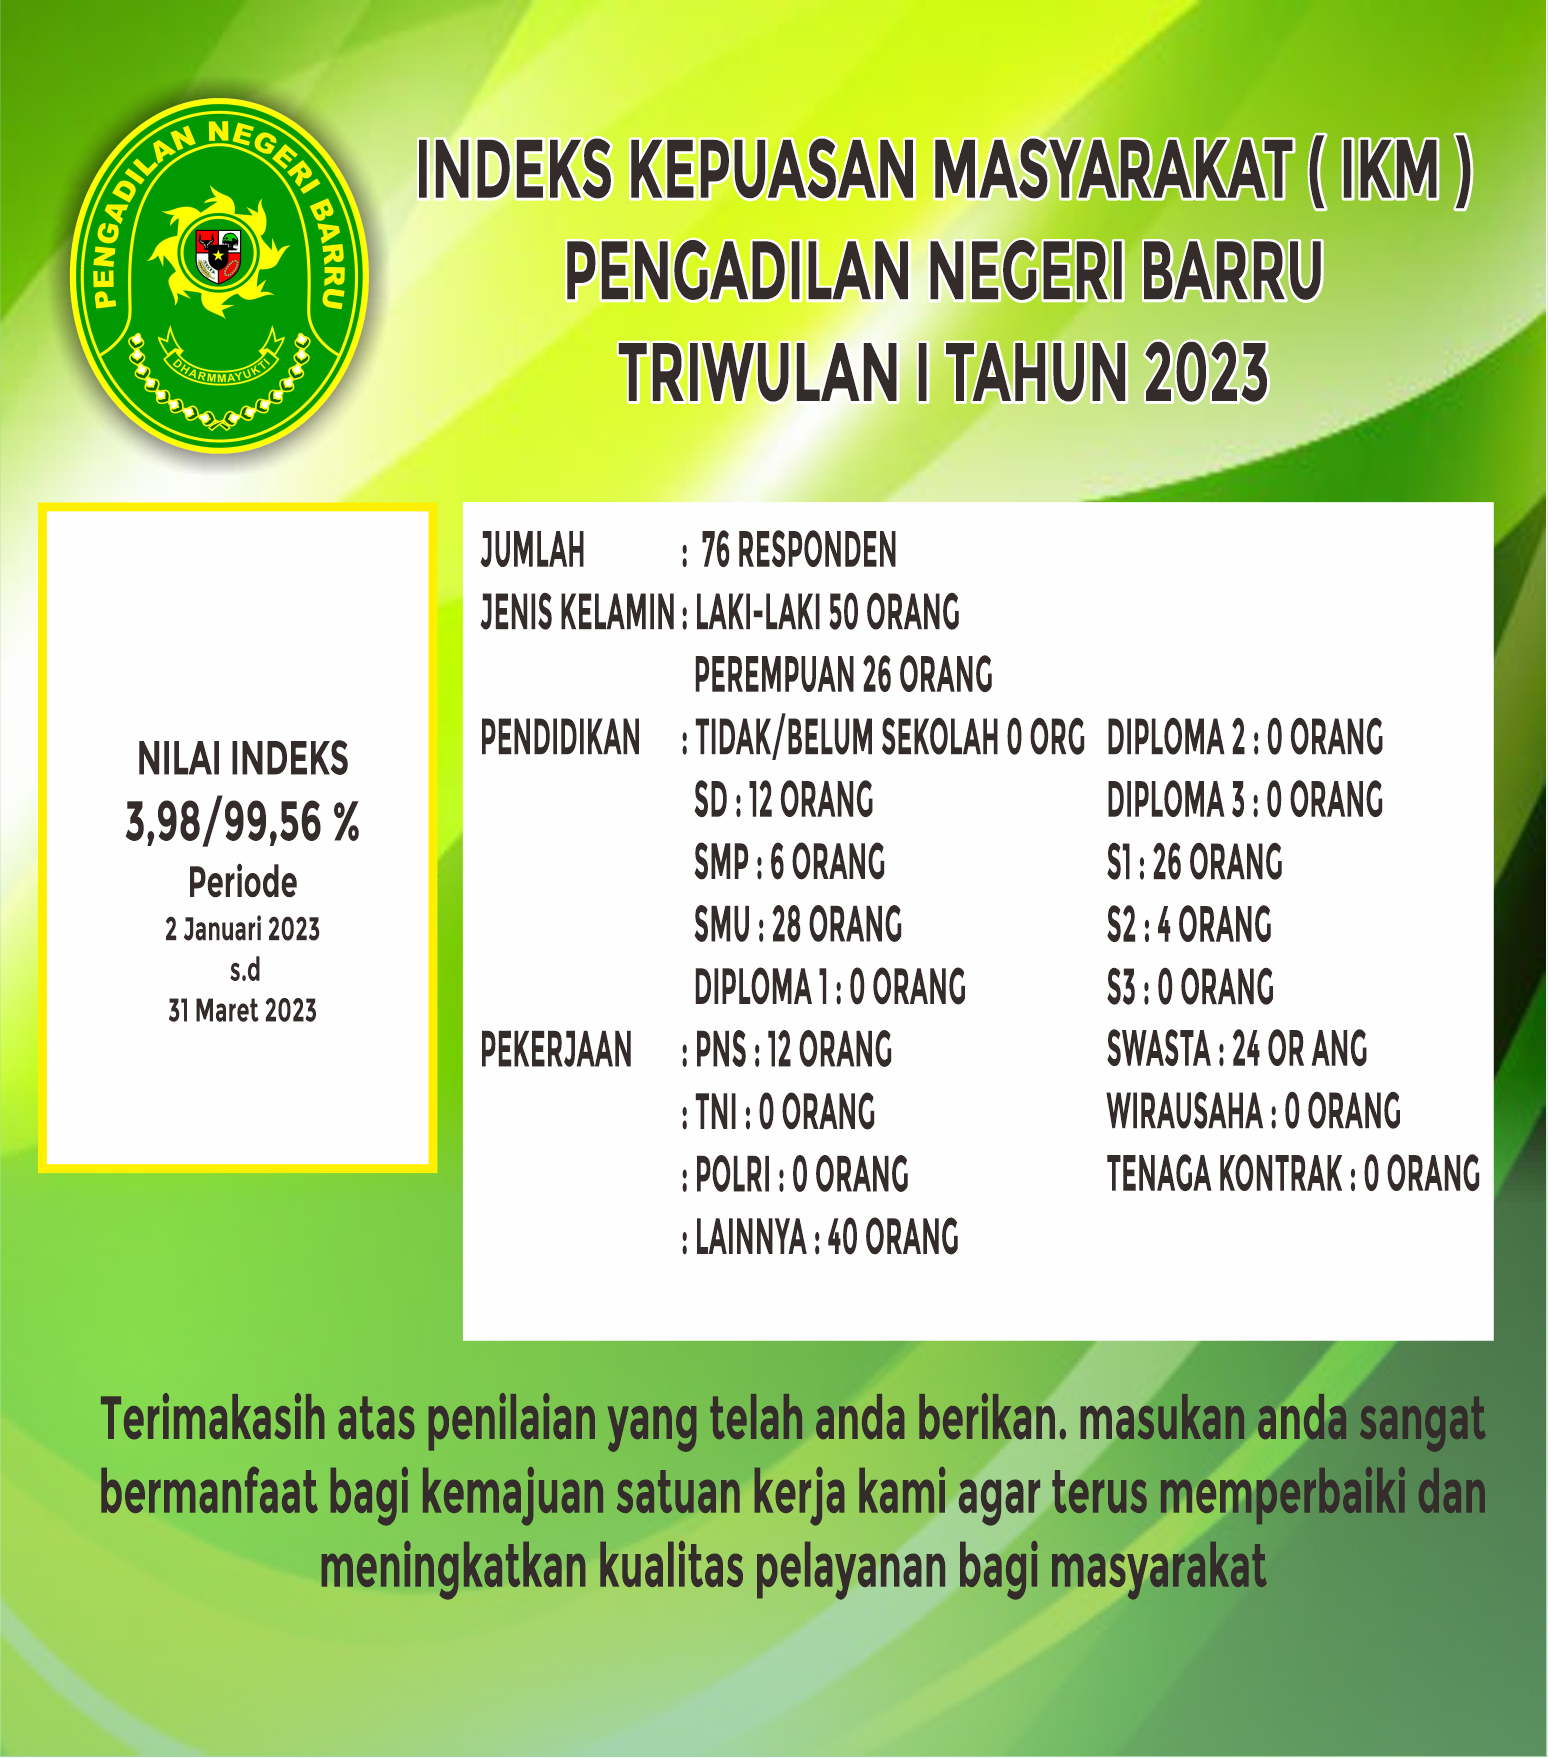 IKM TW I 2023